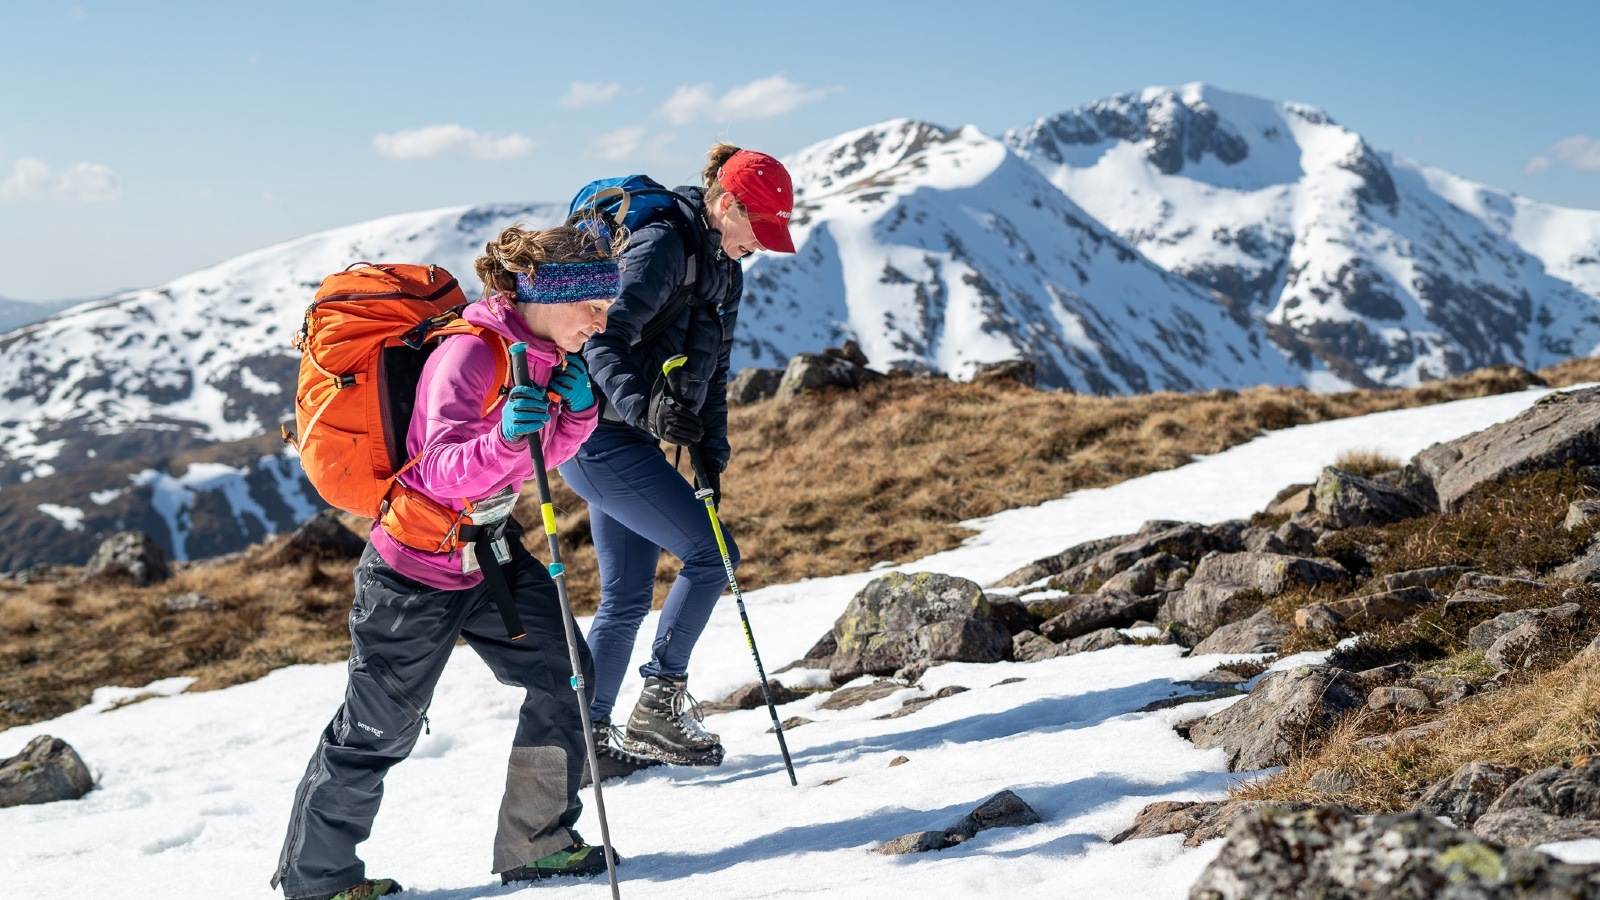 hillwalking mountaineering best outdoor adventure activities scotland